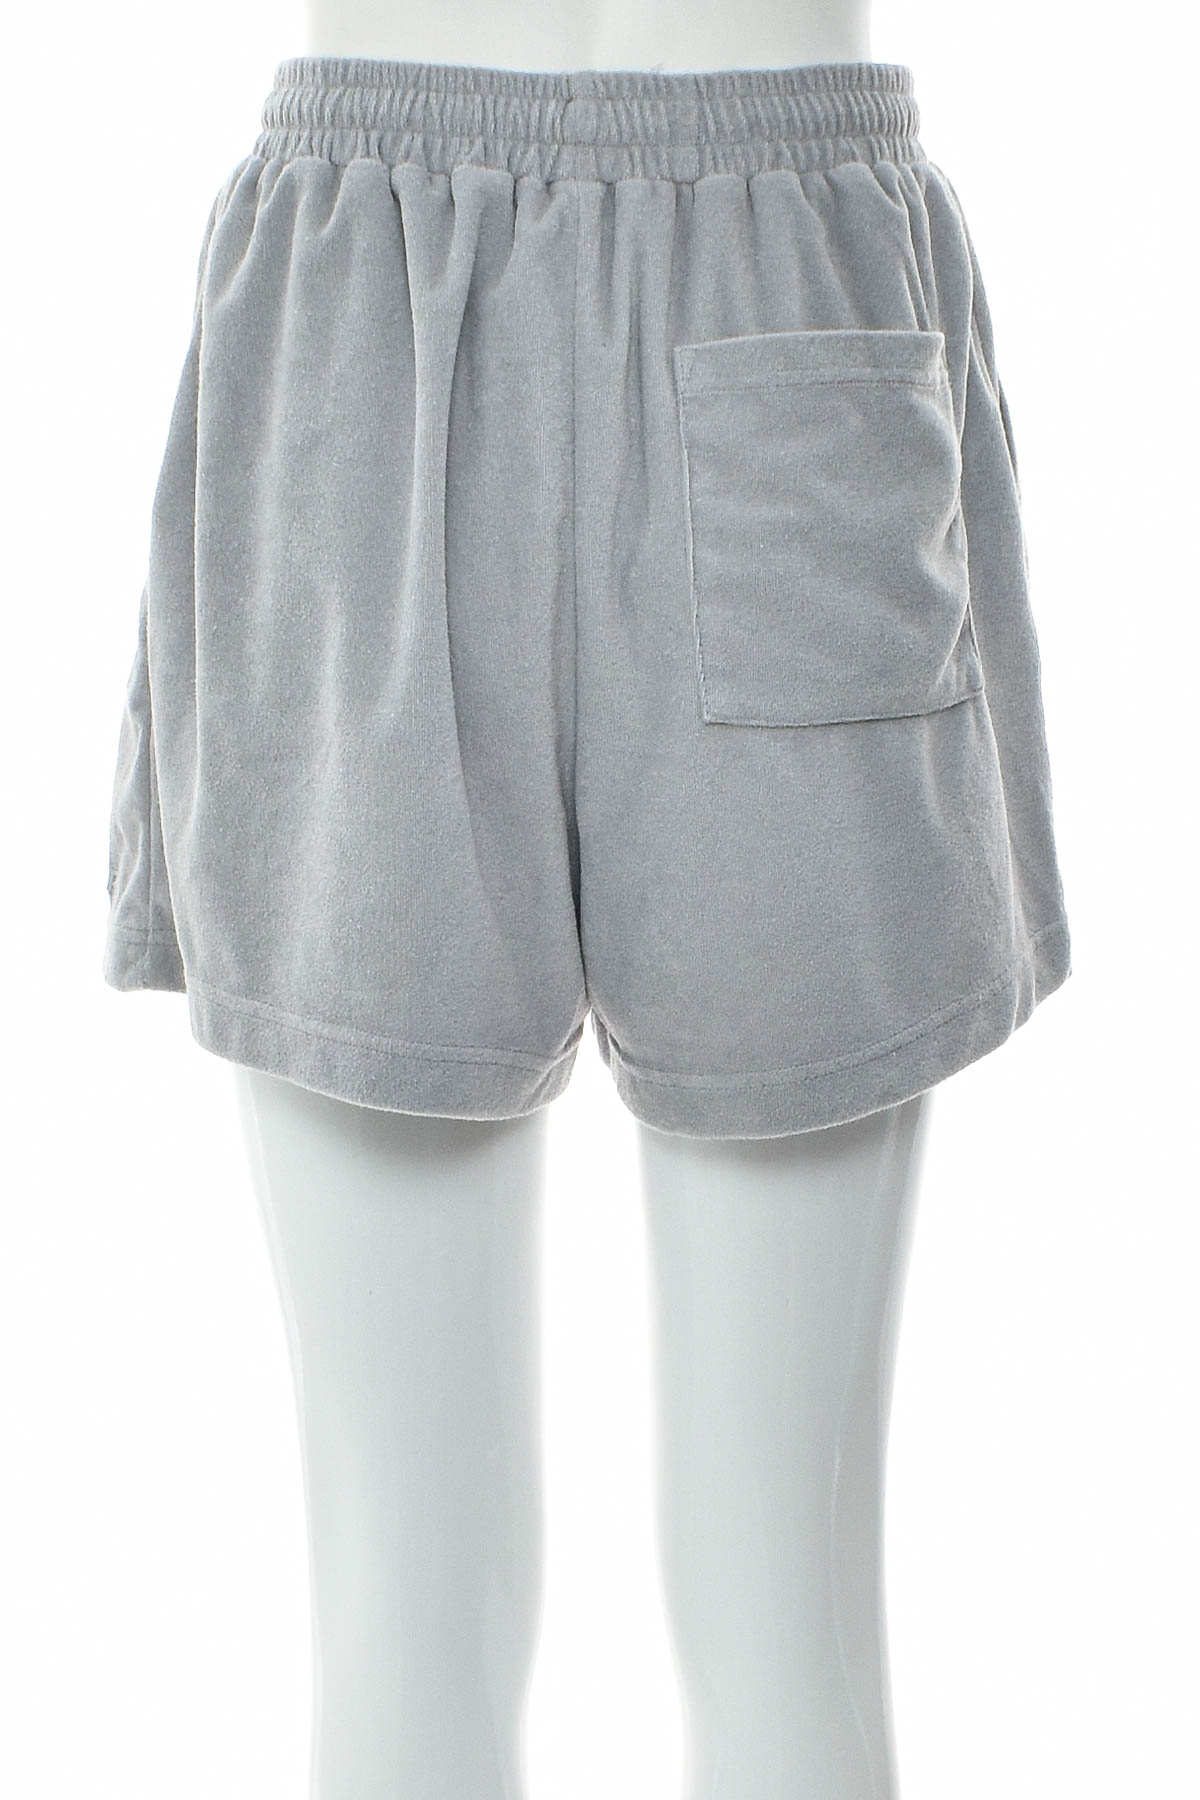 Female shorts - STYLERUNNER - 1